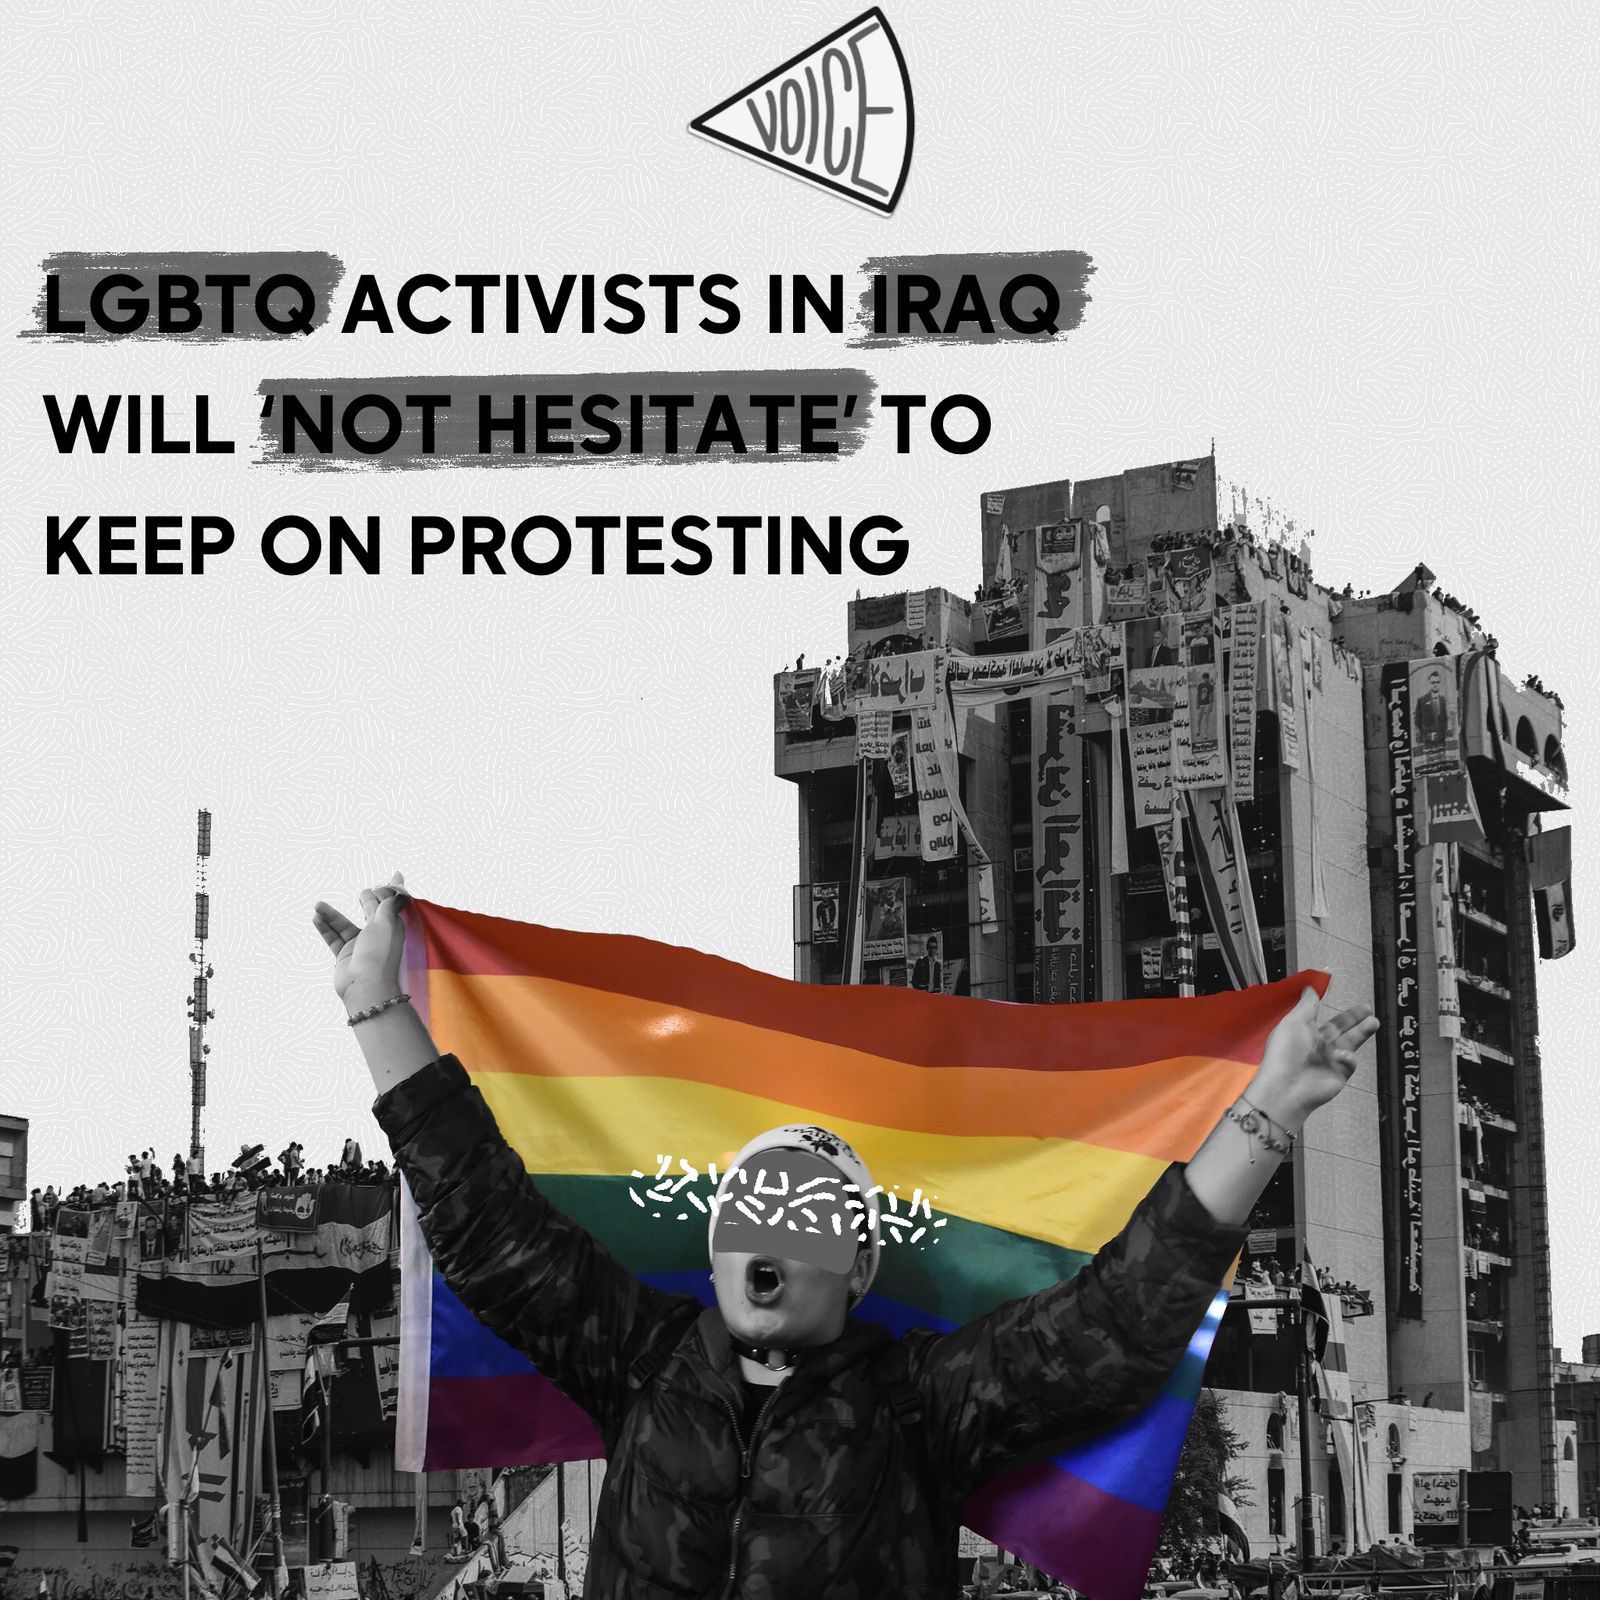 LGBTQ activists in Iraq